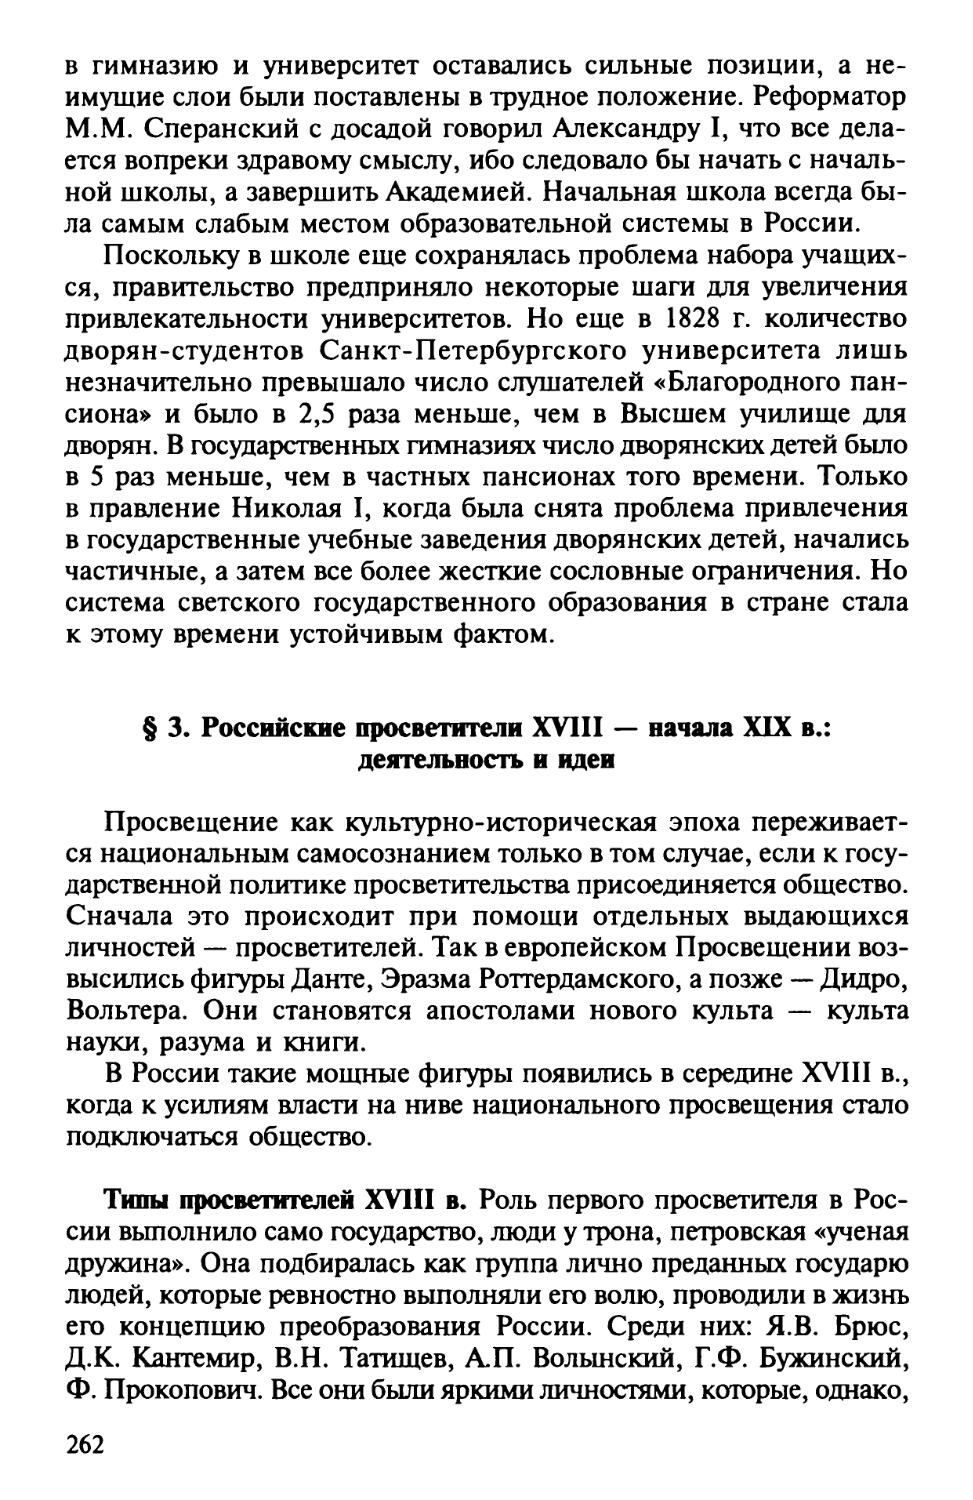 § 3. Российские просветители XVIII – начала XIX в. деятельность и идеи